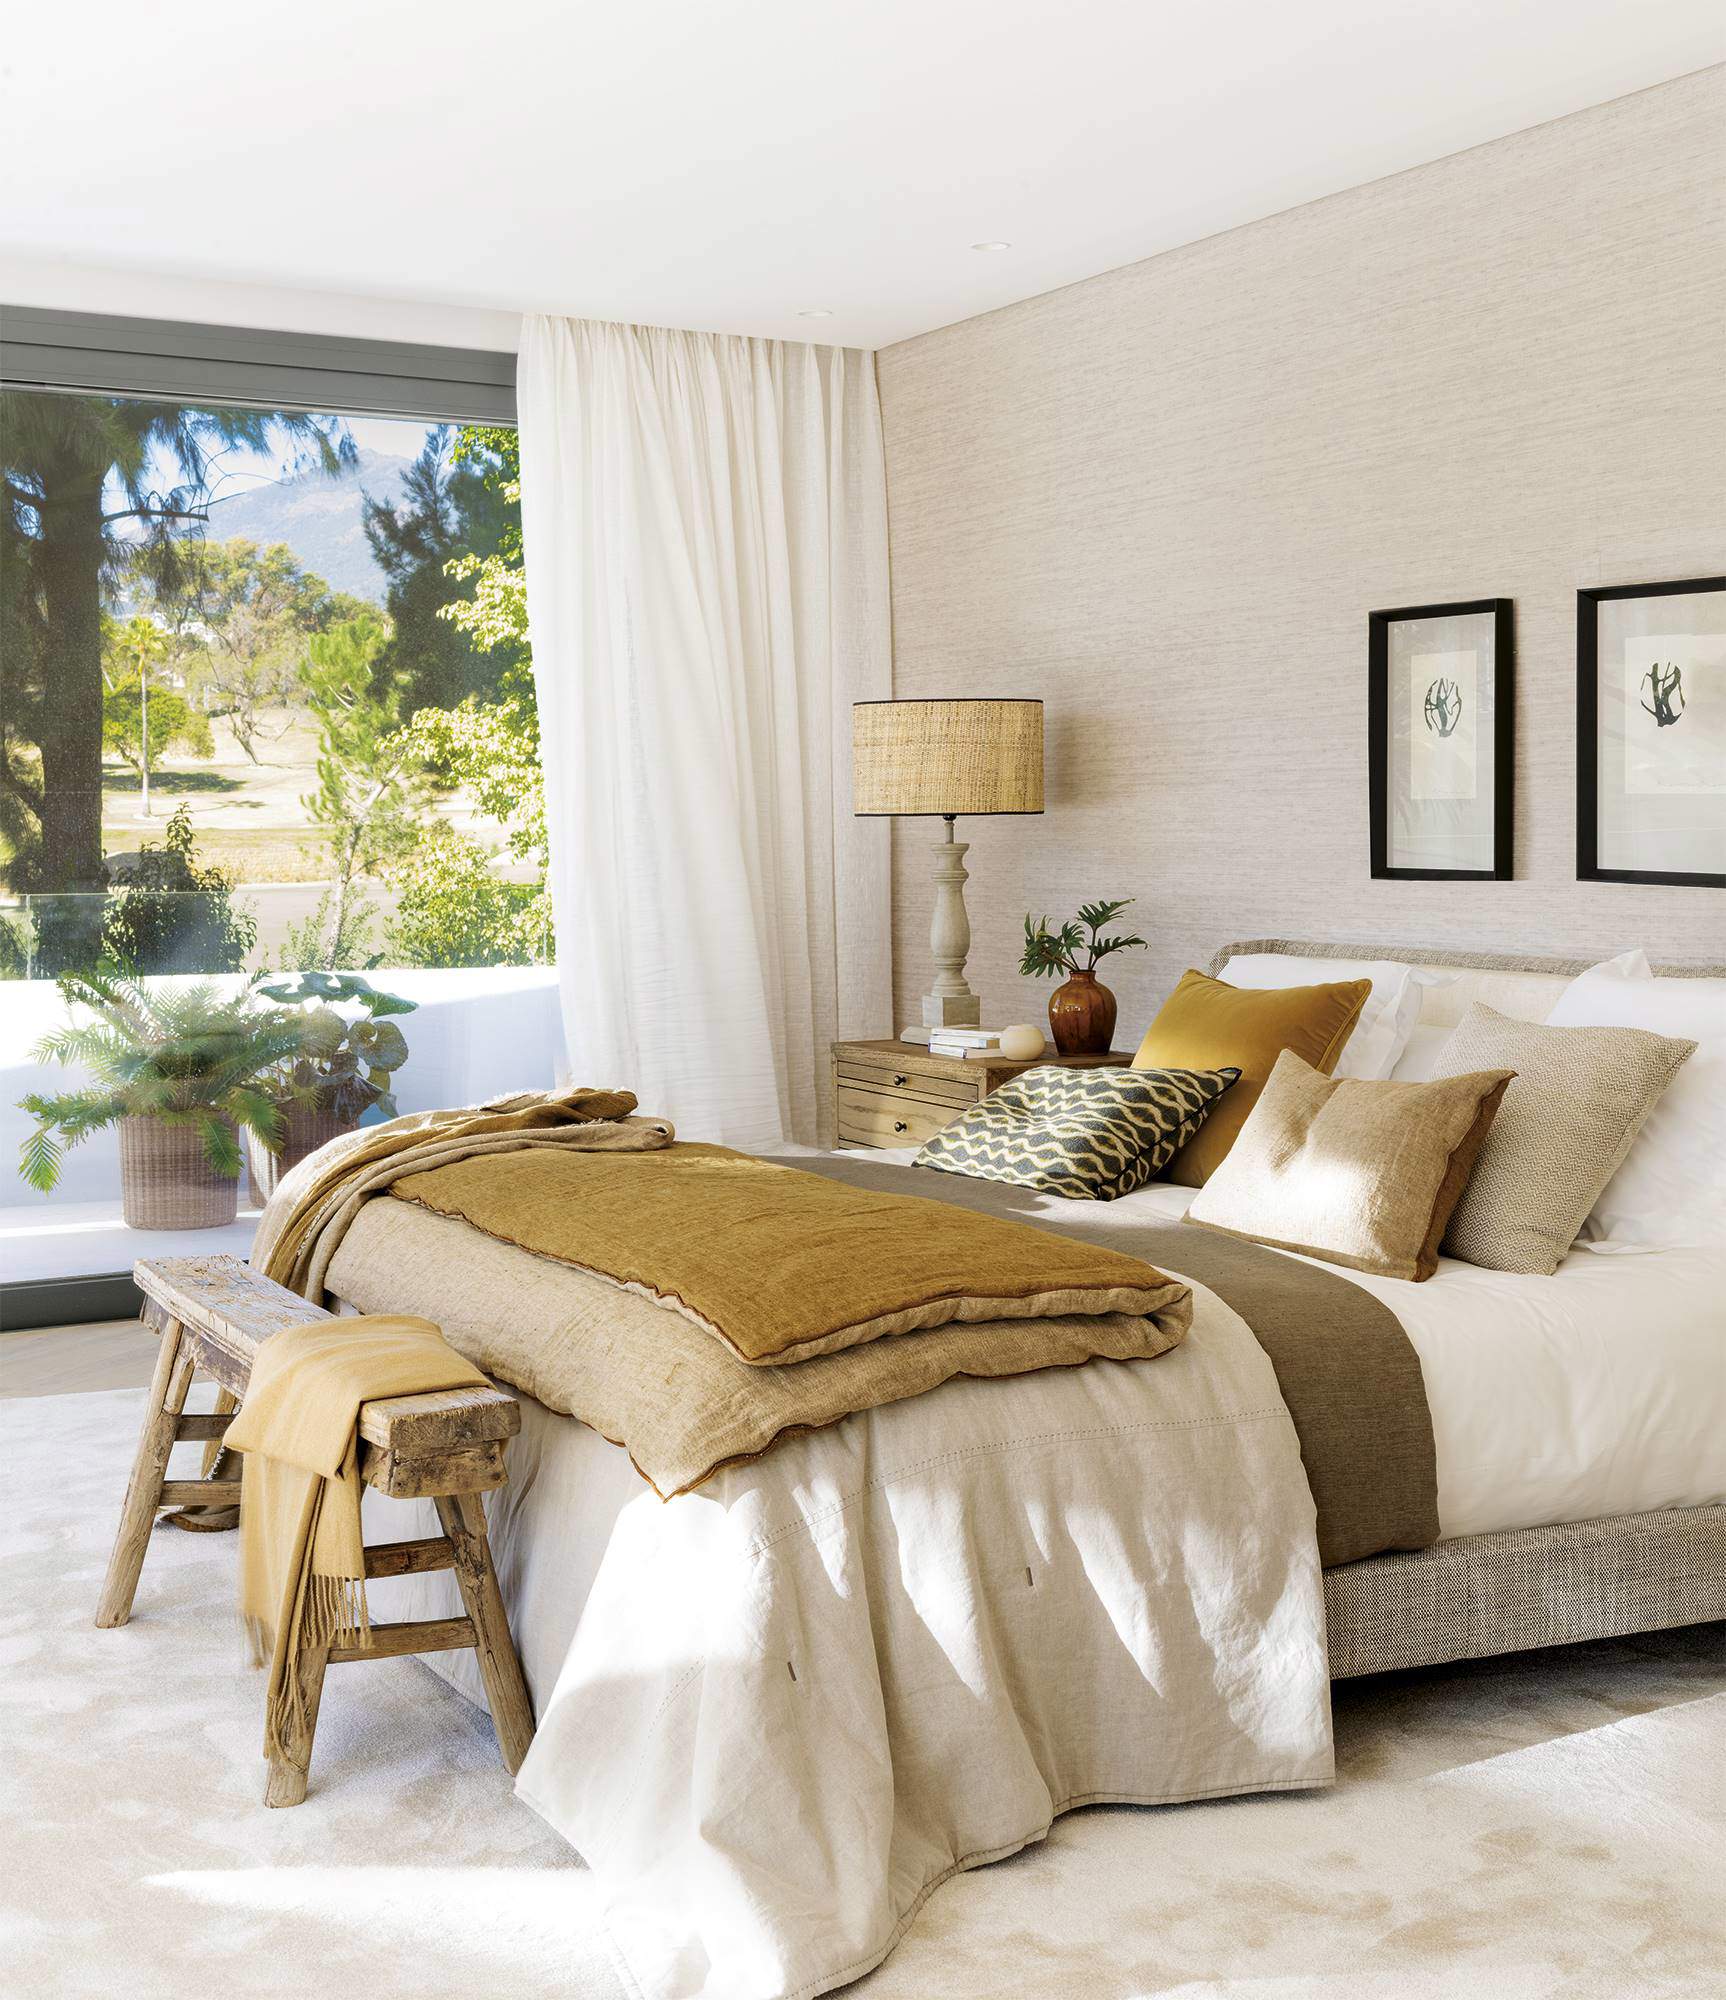 Dormitorio en tonos mostaza y arena, de estilo rústico.